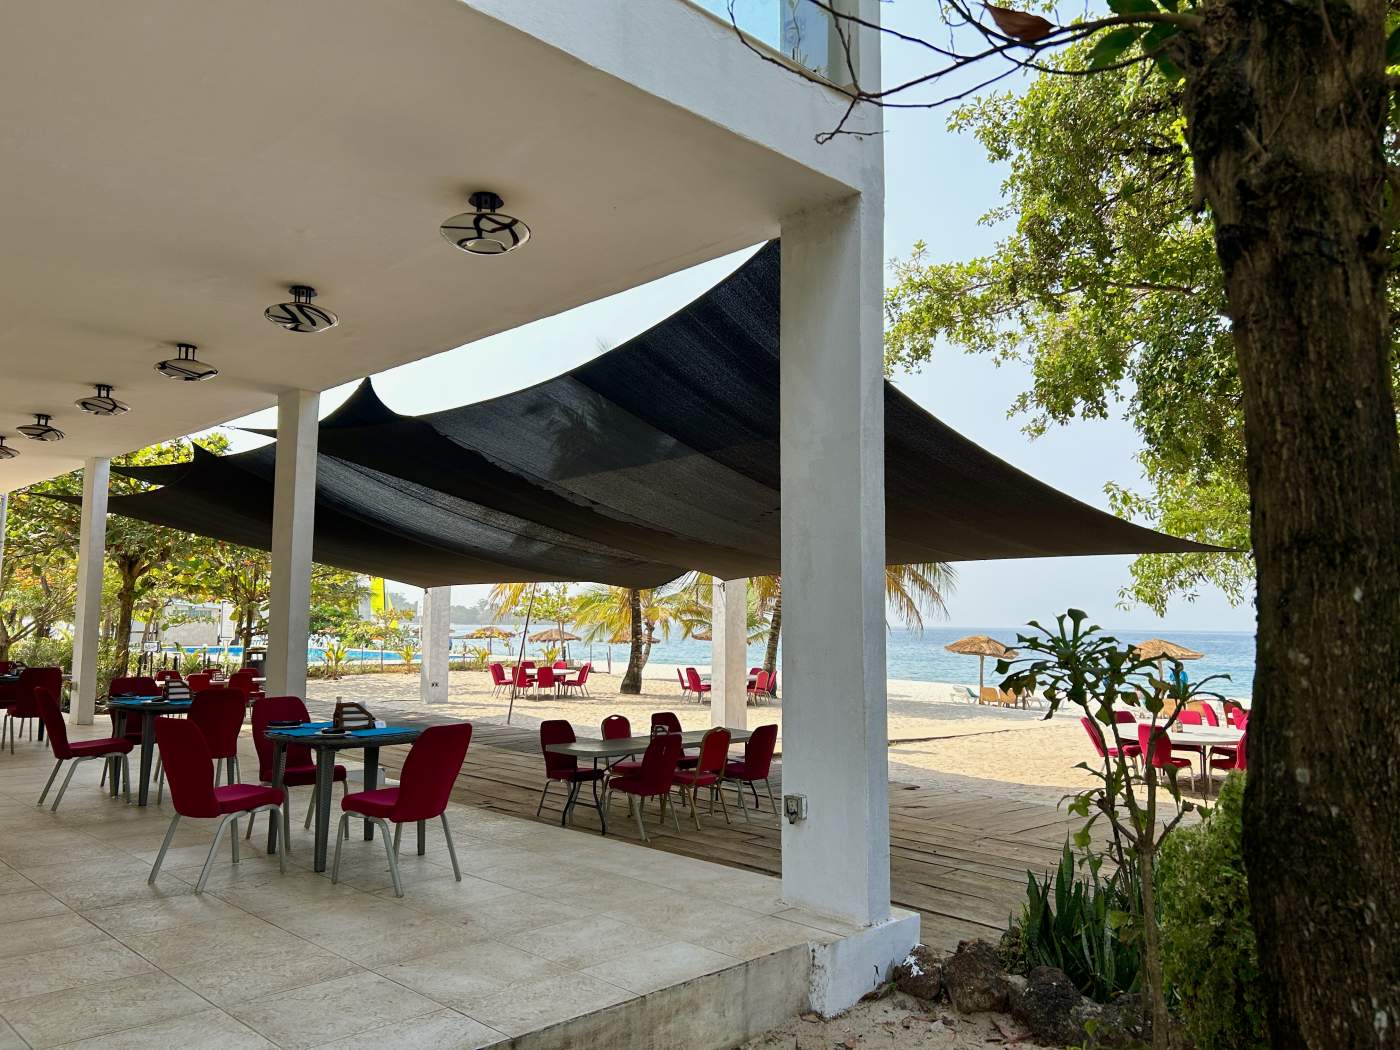 Place Resort in Sierra Leone